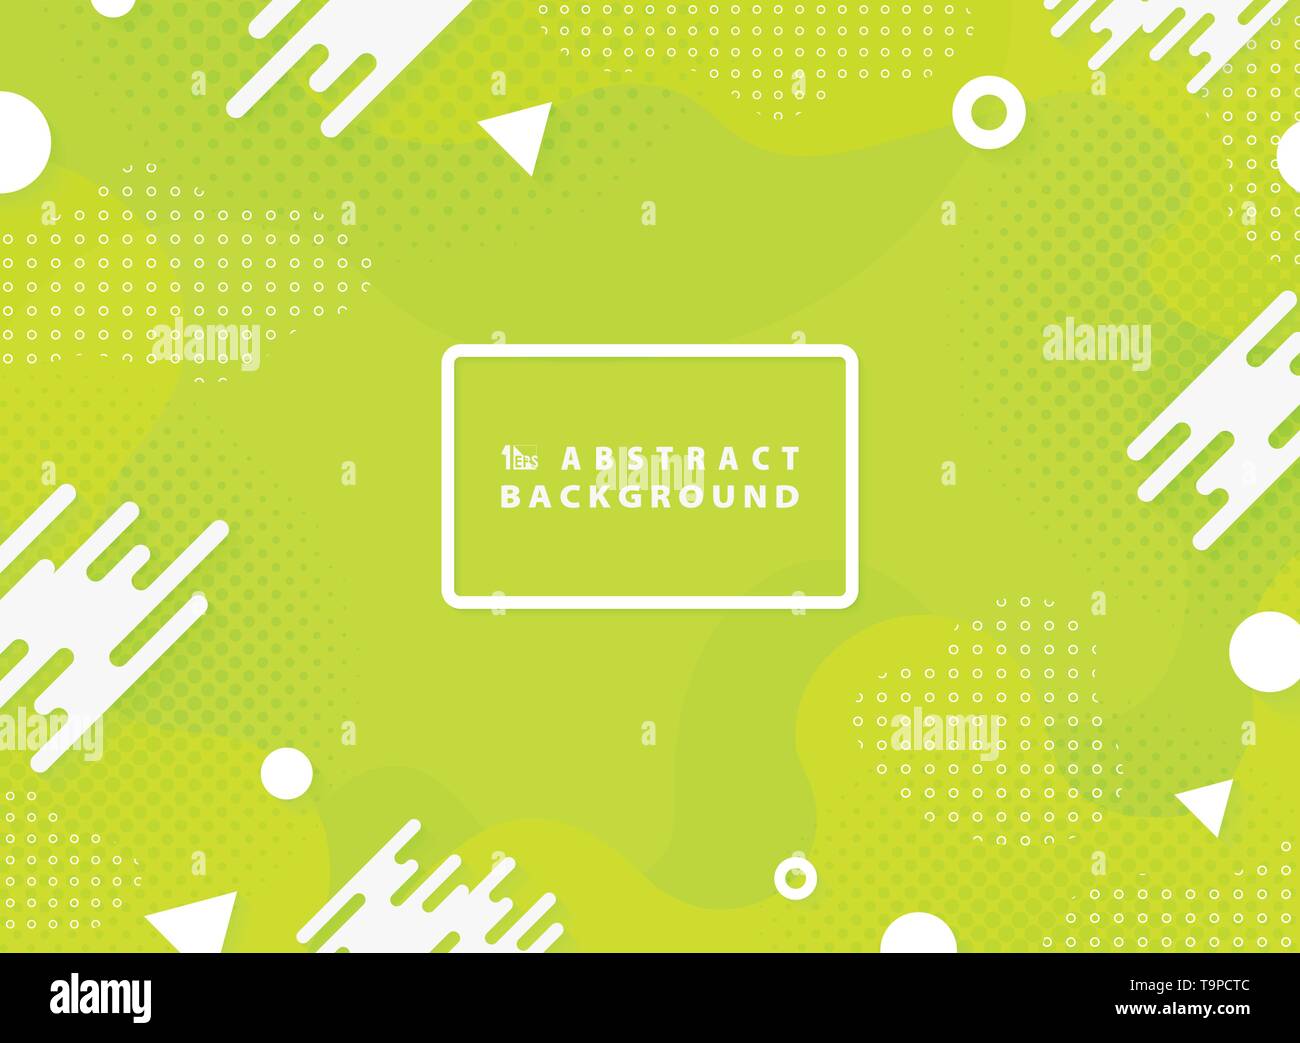 Abstrakte leuchtend grüne Farbe vektor design geometrischen Element Hintergrund. Sie können für die Landing Page, Web site verwenden, Muster, Zeichnungen, Drucken, Abdeckung Stock Vektor